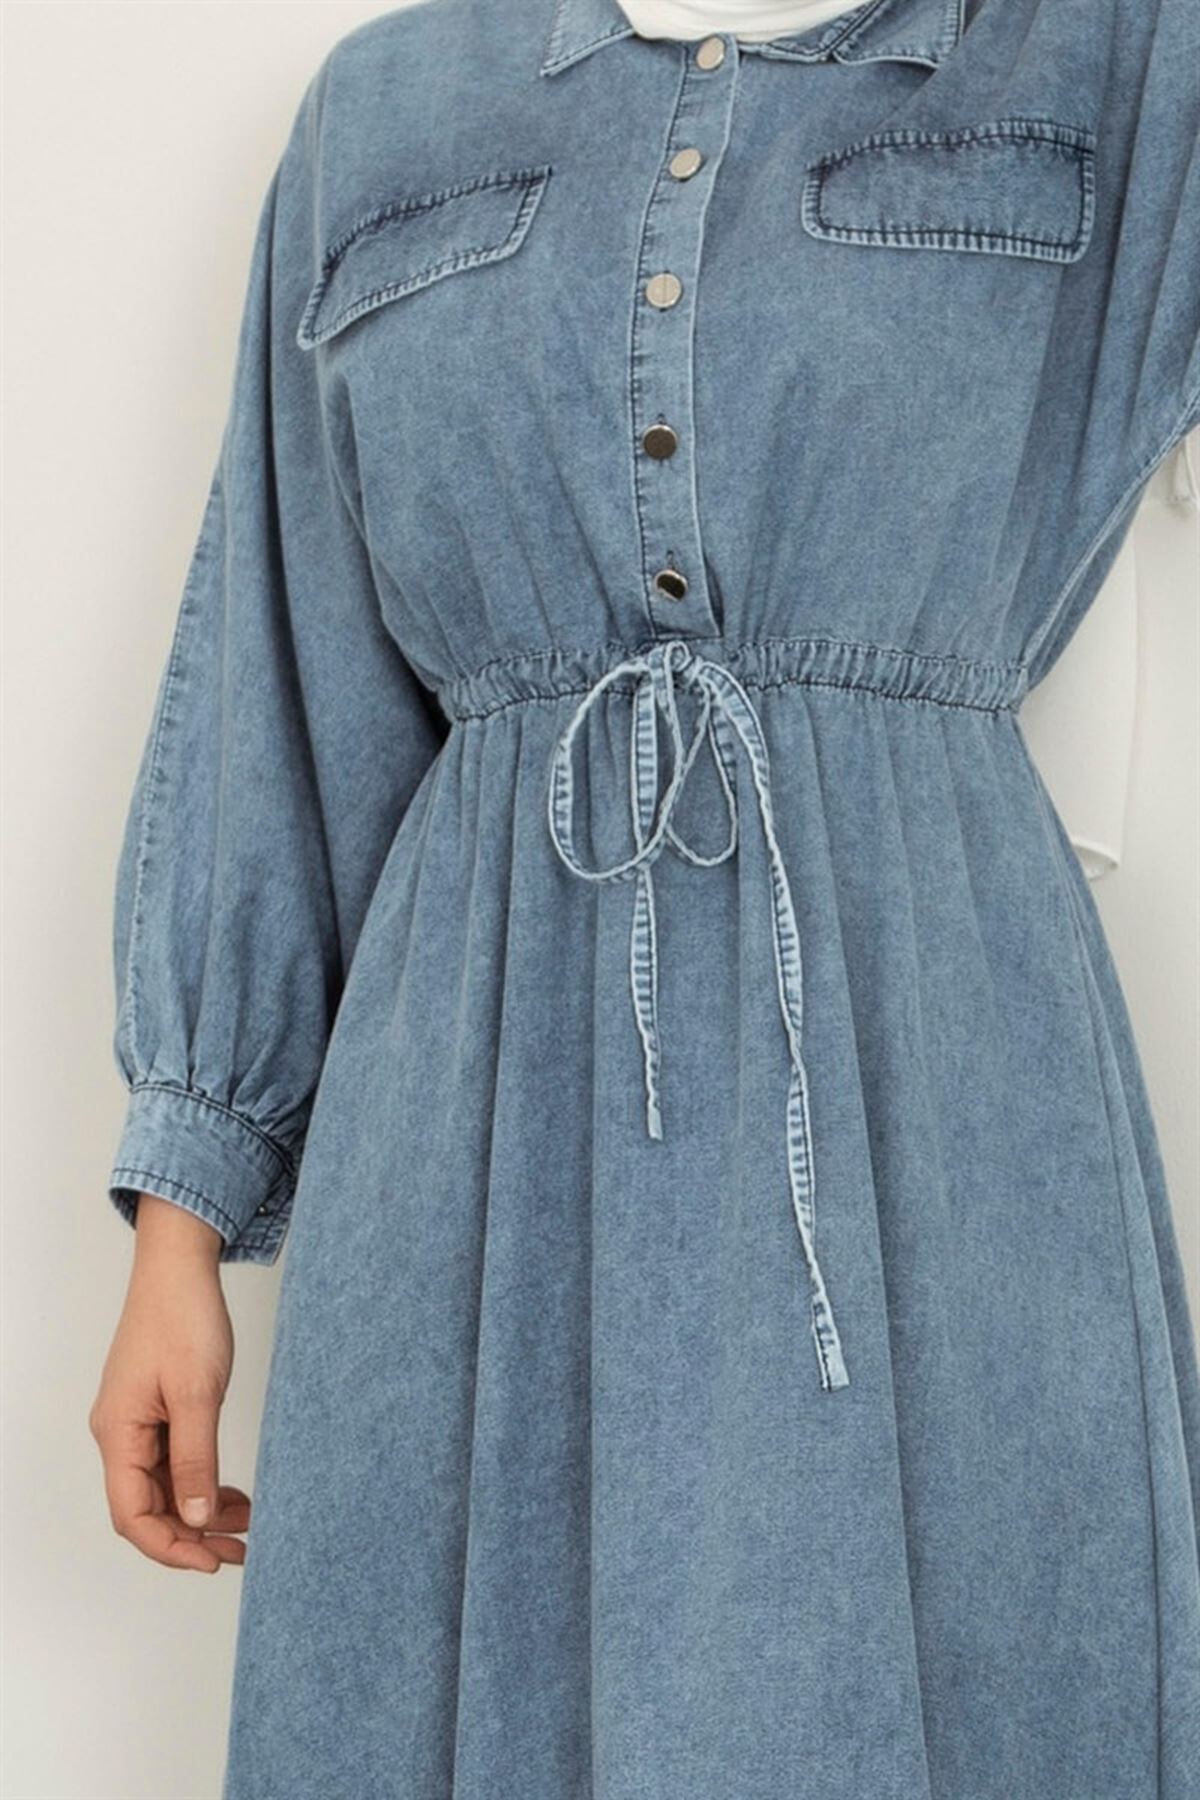 Kadın Belden Bağcıklı Kot Elbise - Mavi